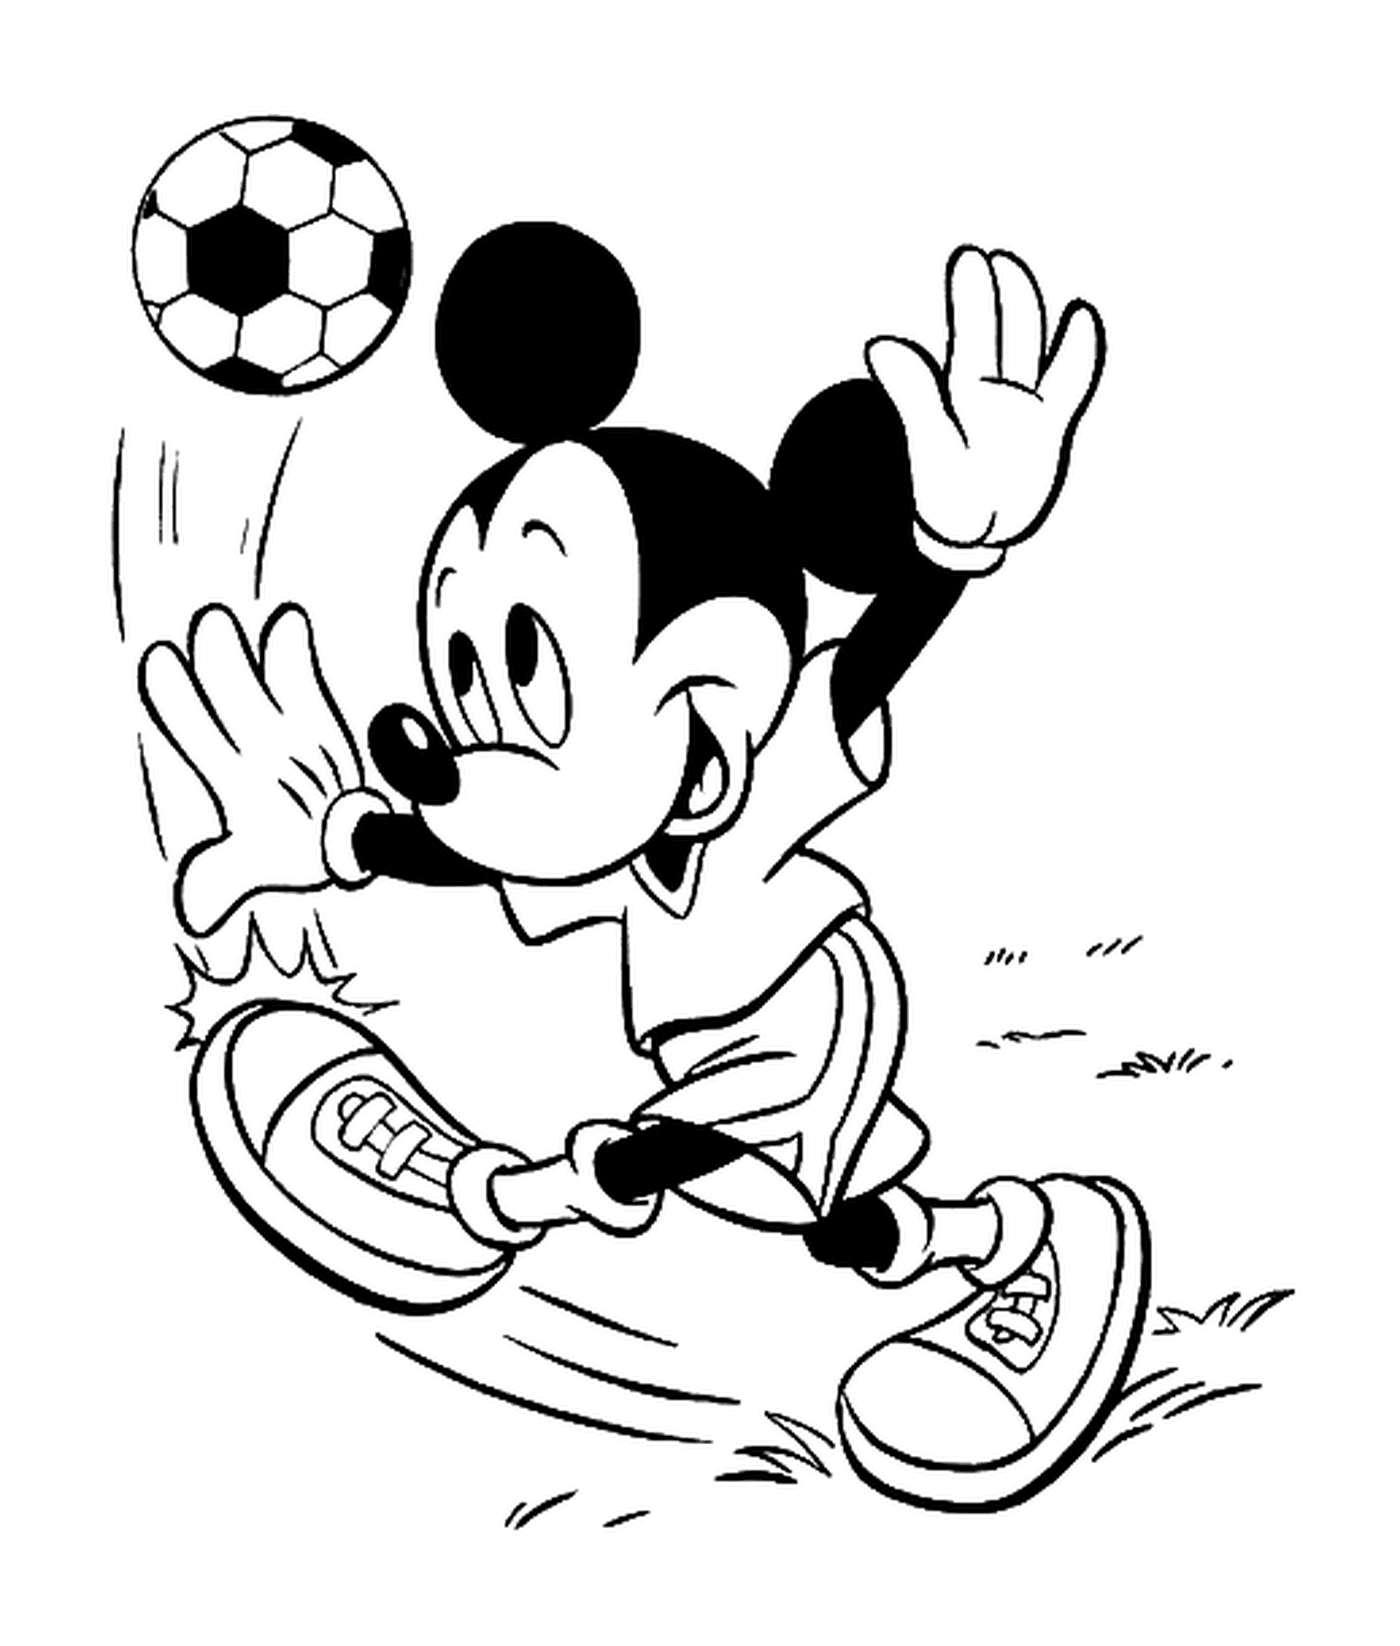  Mickey joga futebol com uma bola de futebol 